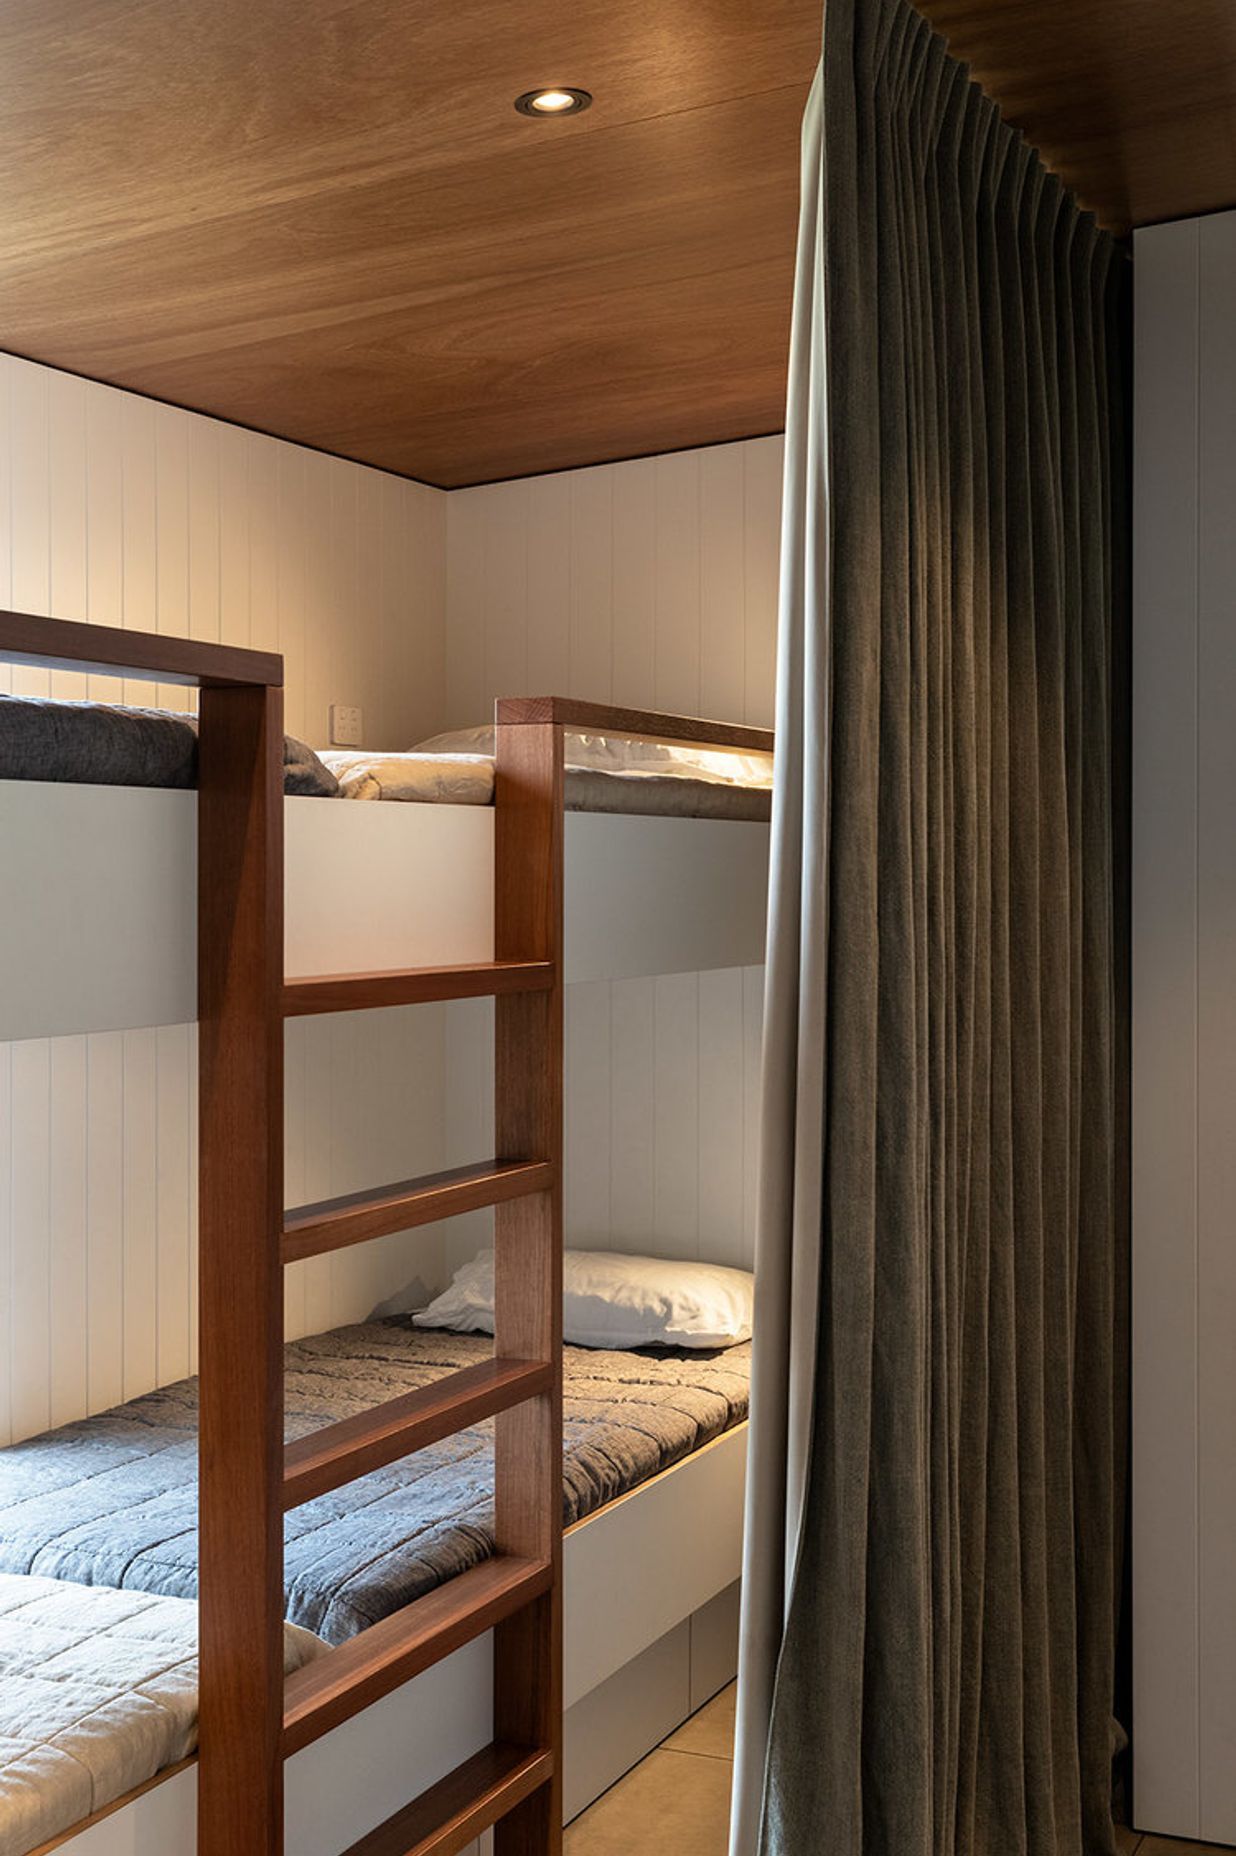 A bunkroom provides additional beds for visiting grandchildren.